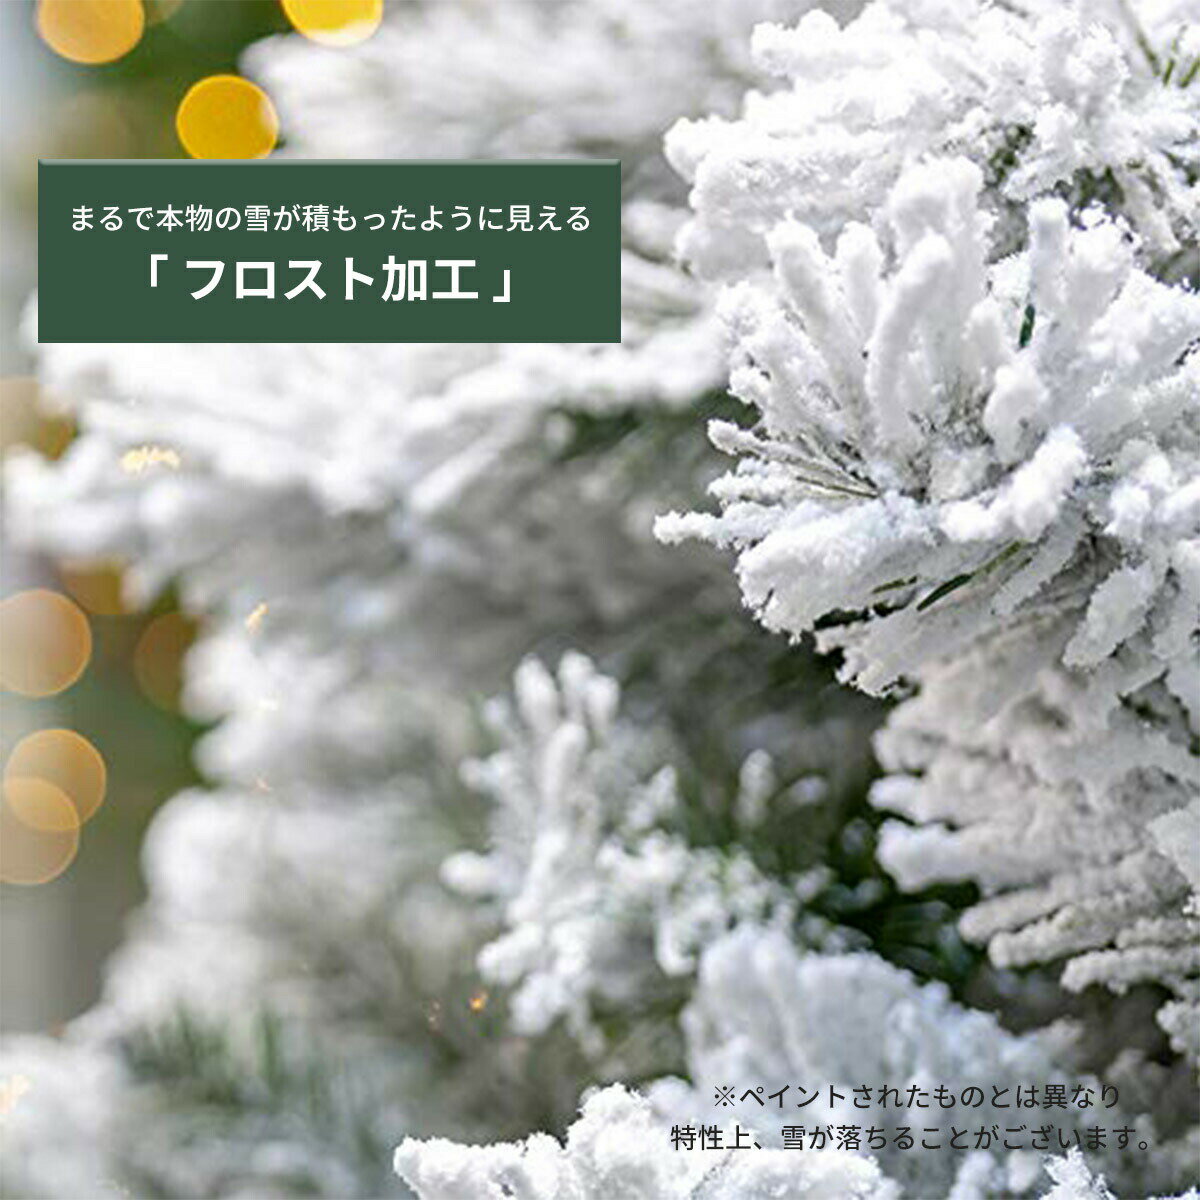 [180cm] VeroMan クリスマスツリー スノーホワイト 雪化粧 オーナメント セット